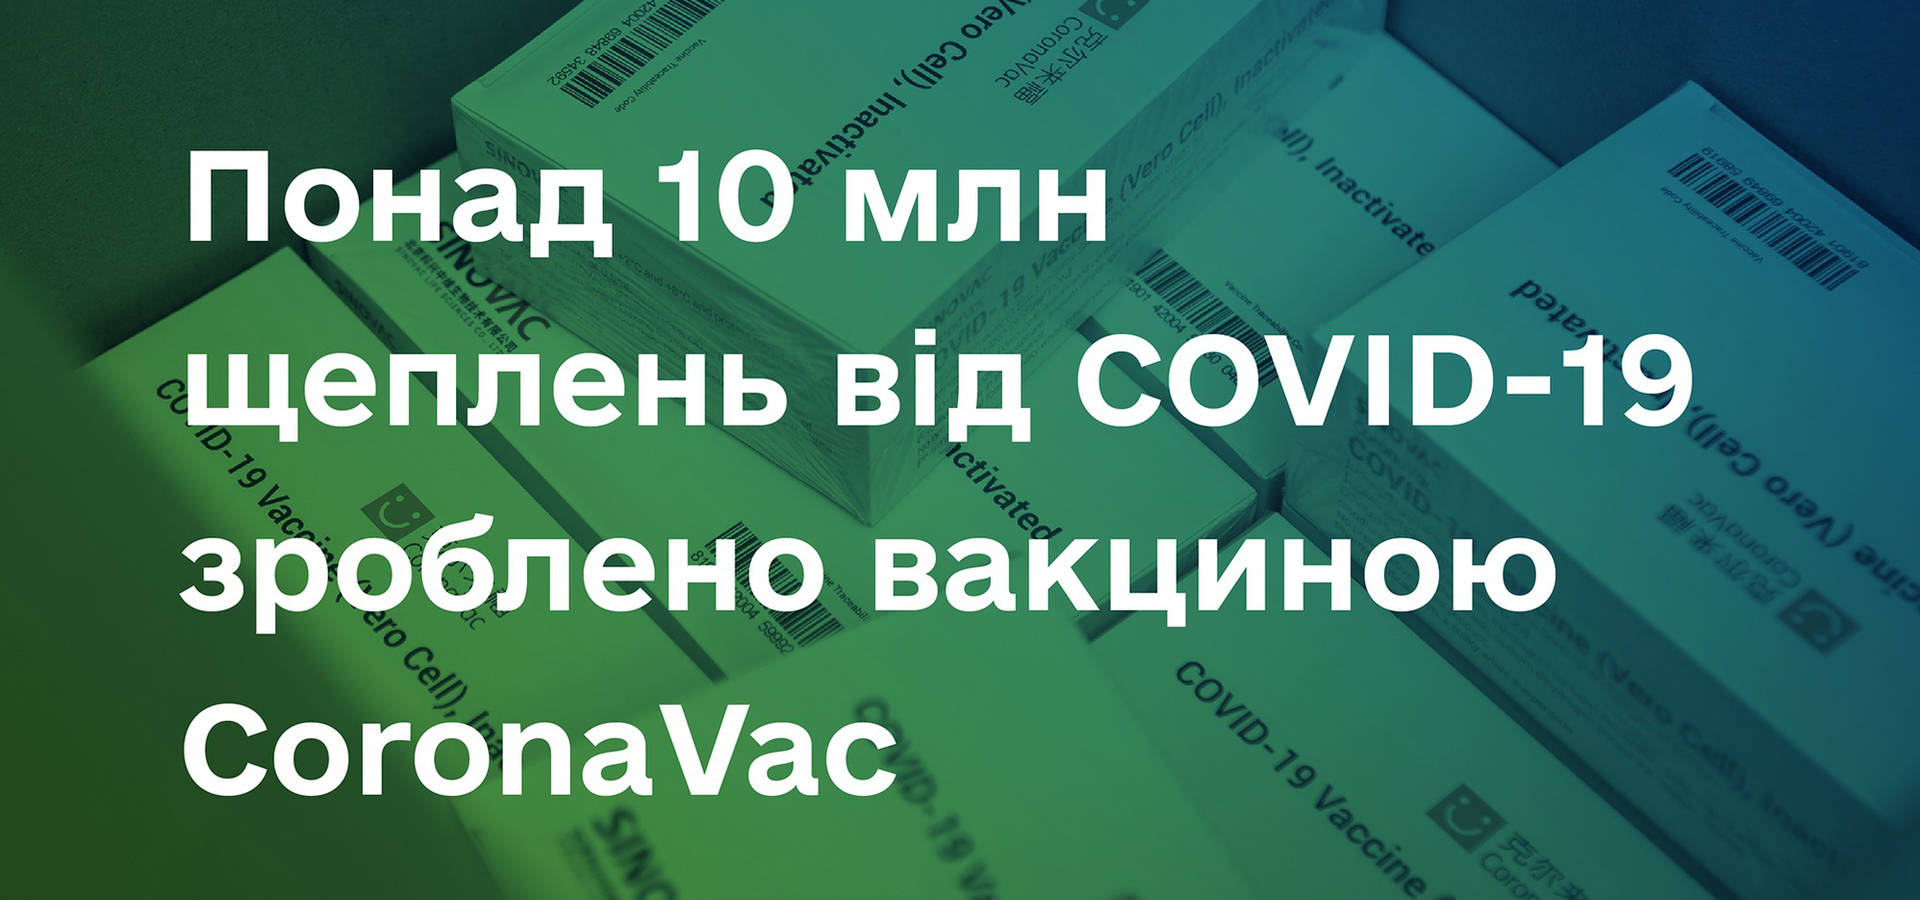 Понад 10 мільйонів українців вакцинувалися CoronaVac